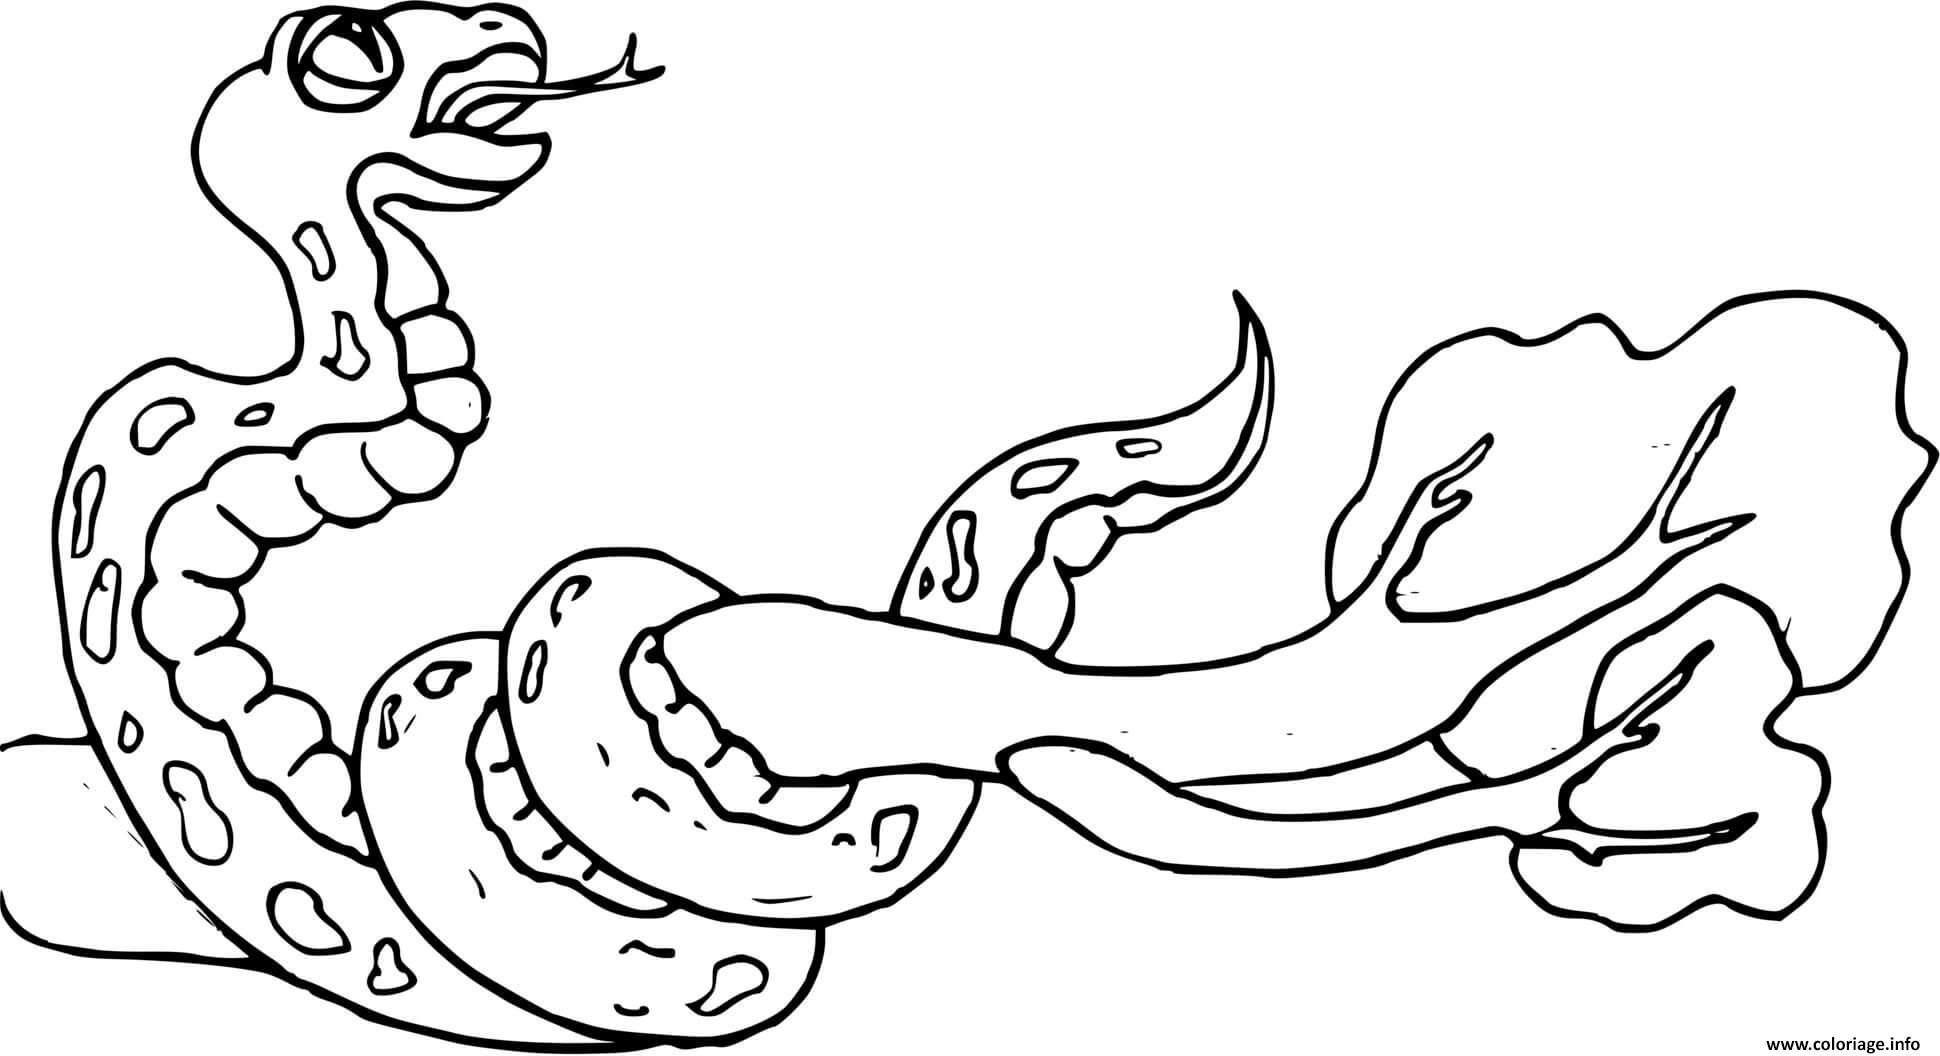 Dessin serpent enroulant une branche Coloriage Gratuit à Imprimer